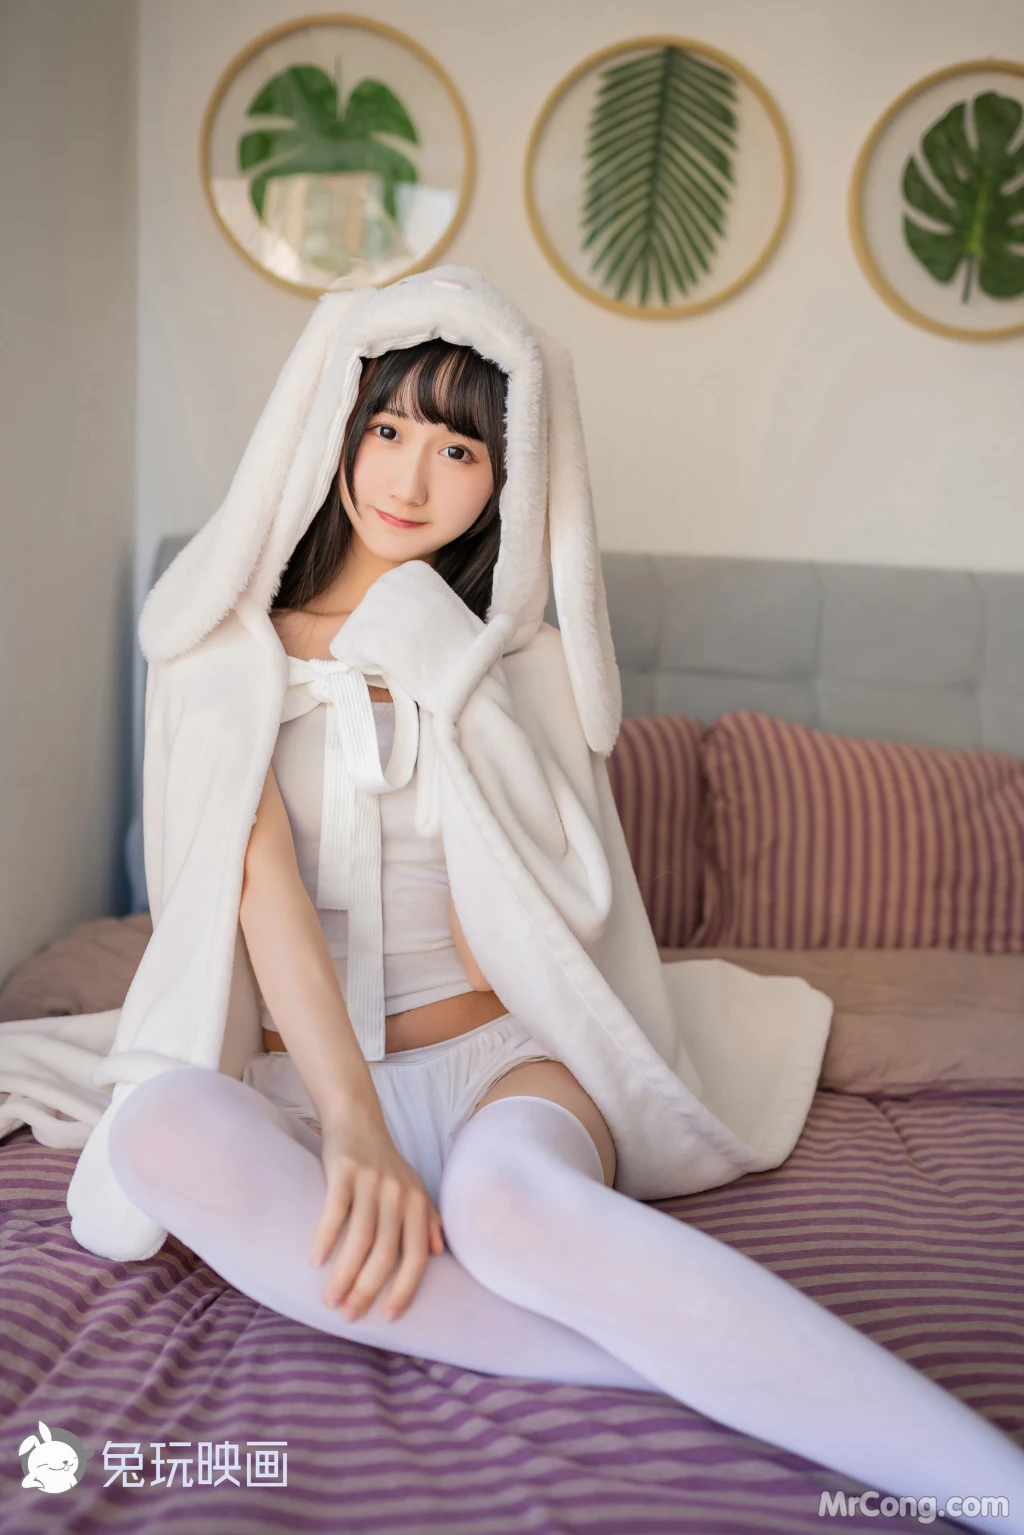 Cosplay@兔玩映画 Vol.035: 浴巾兔子 (42 photos) photo 1-3